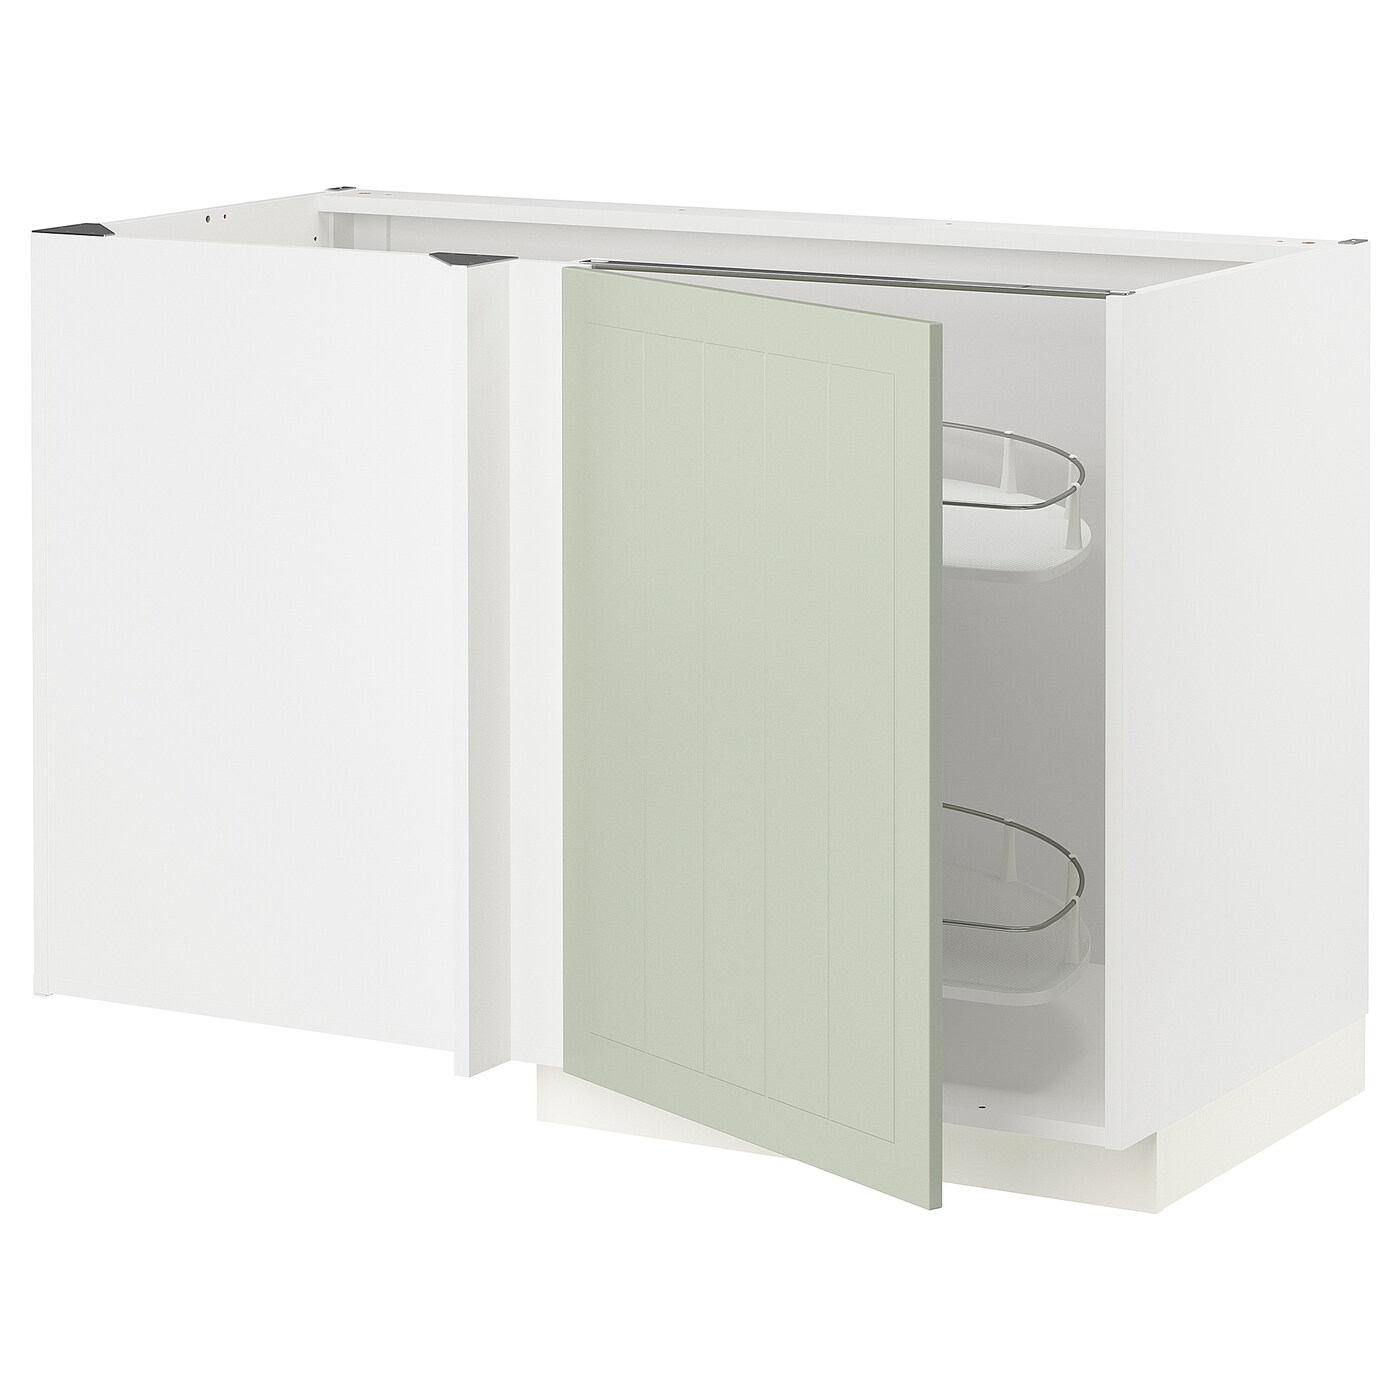 Напольный кухонный шкаф  - IKEA METOD, 88x67,5x127,5см, белый/светло-зеленый, МЕТОД ИКЕА